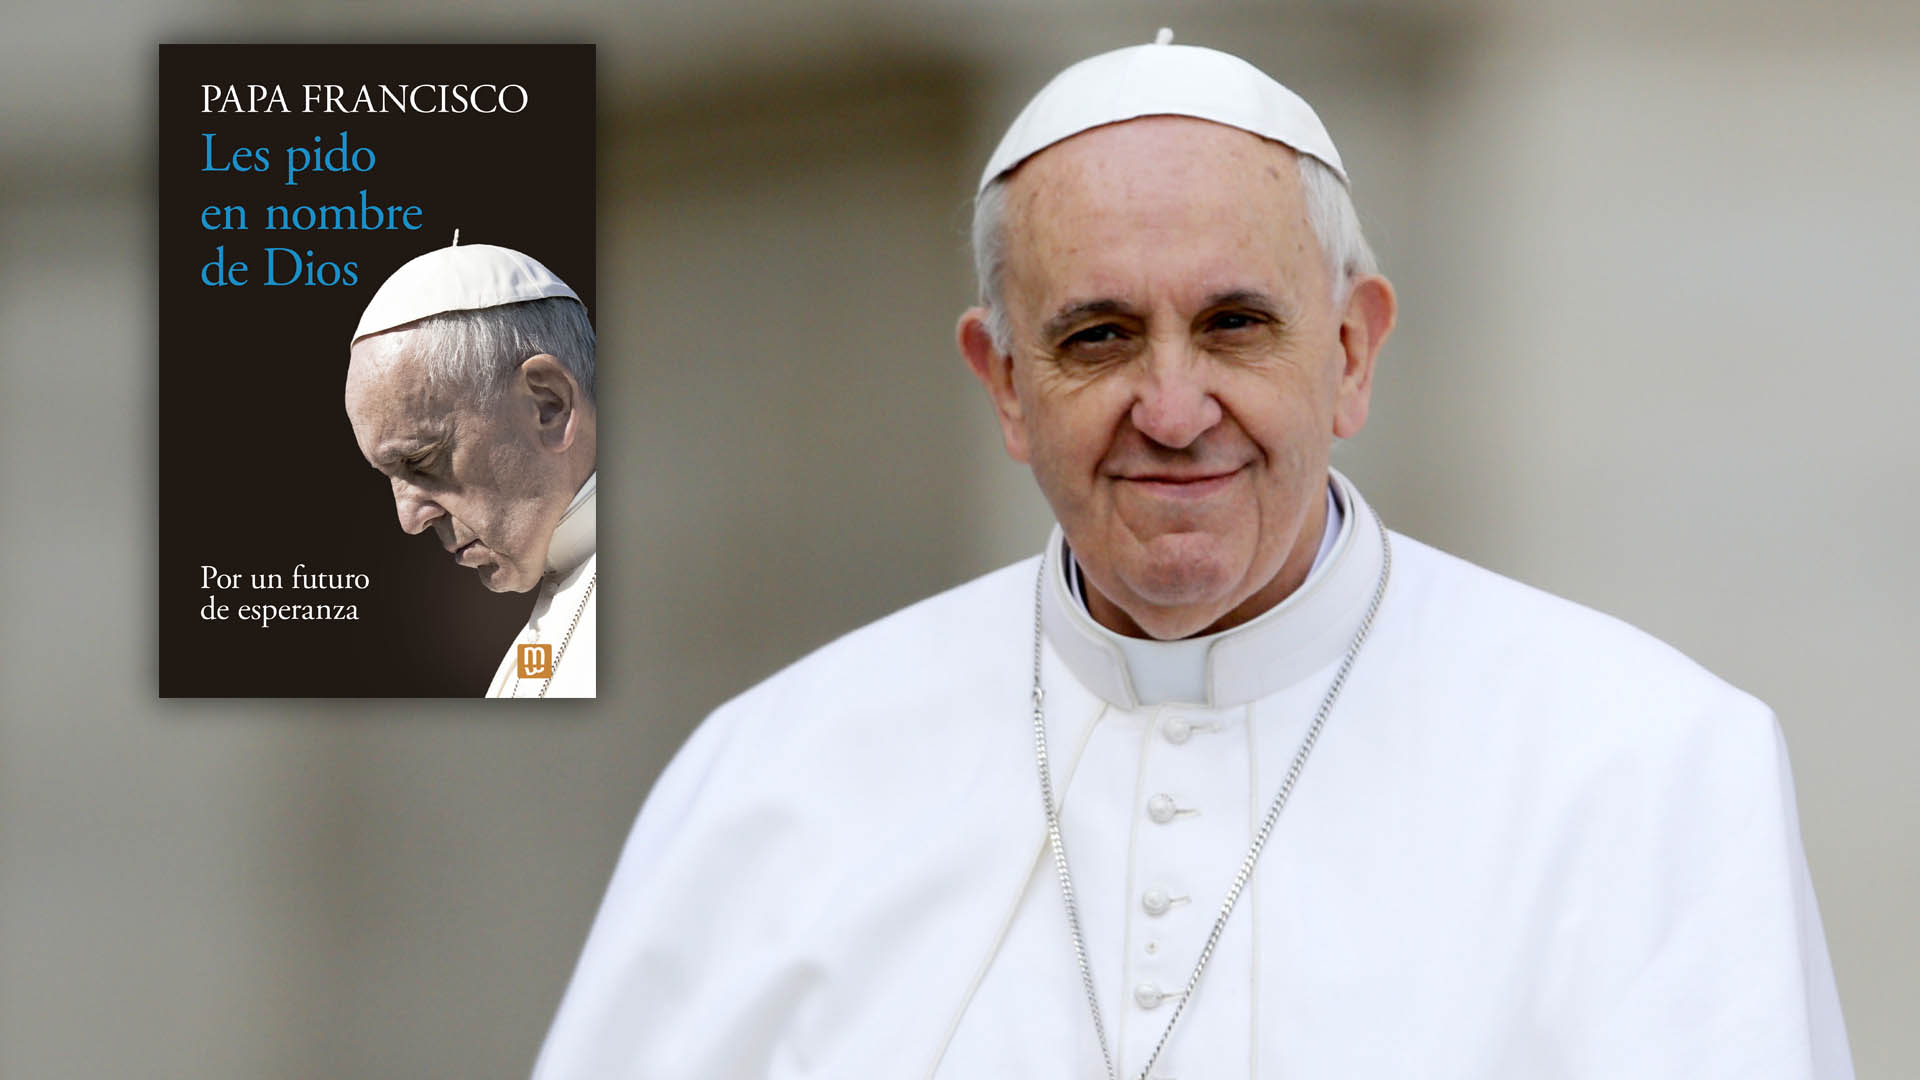 Diez frases del papa Francisco en su nuevo libro: TikTok, abusos sexuales  en la Iglesia y la urgencia climática - Infobae